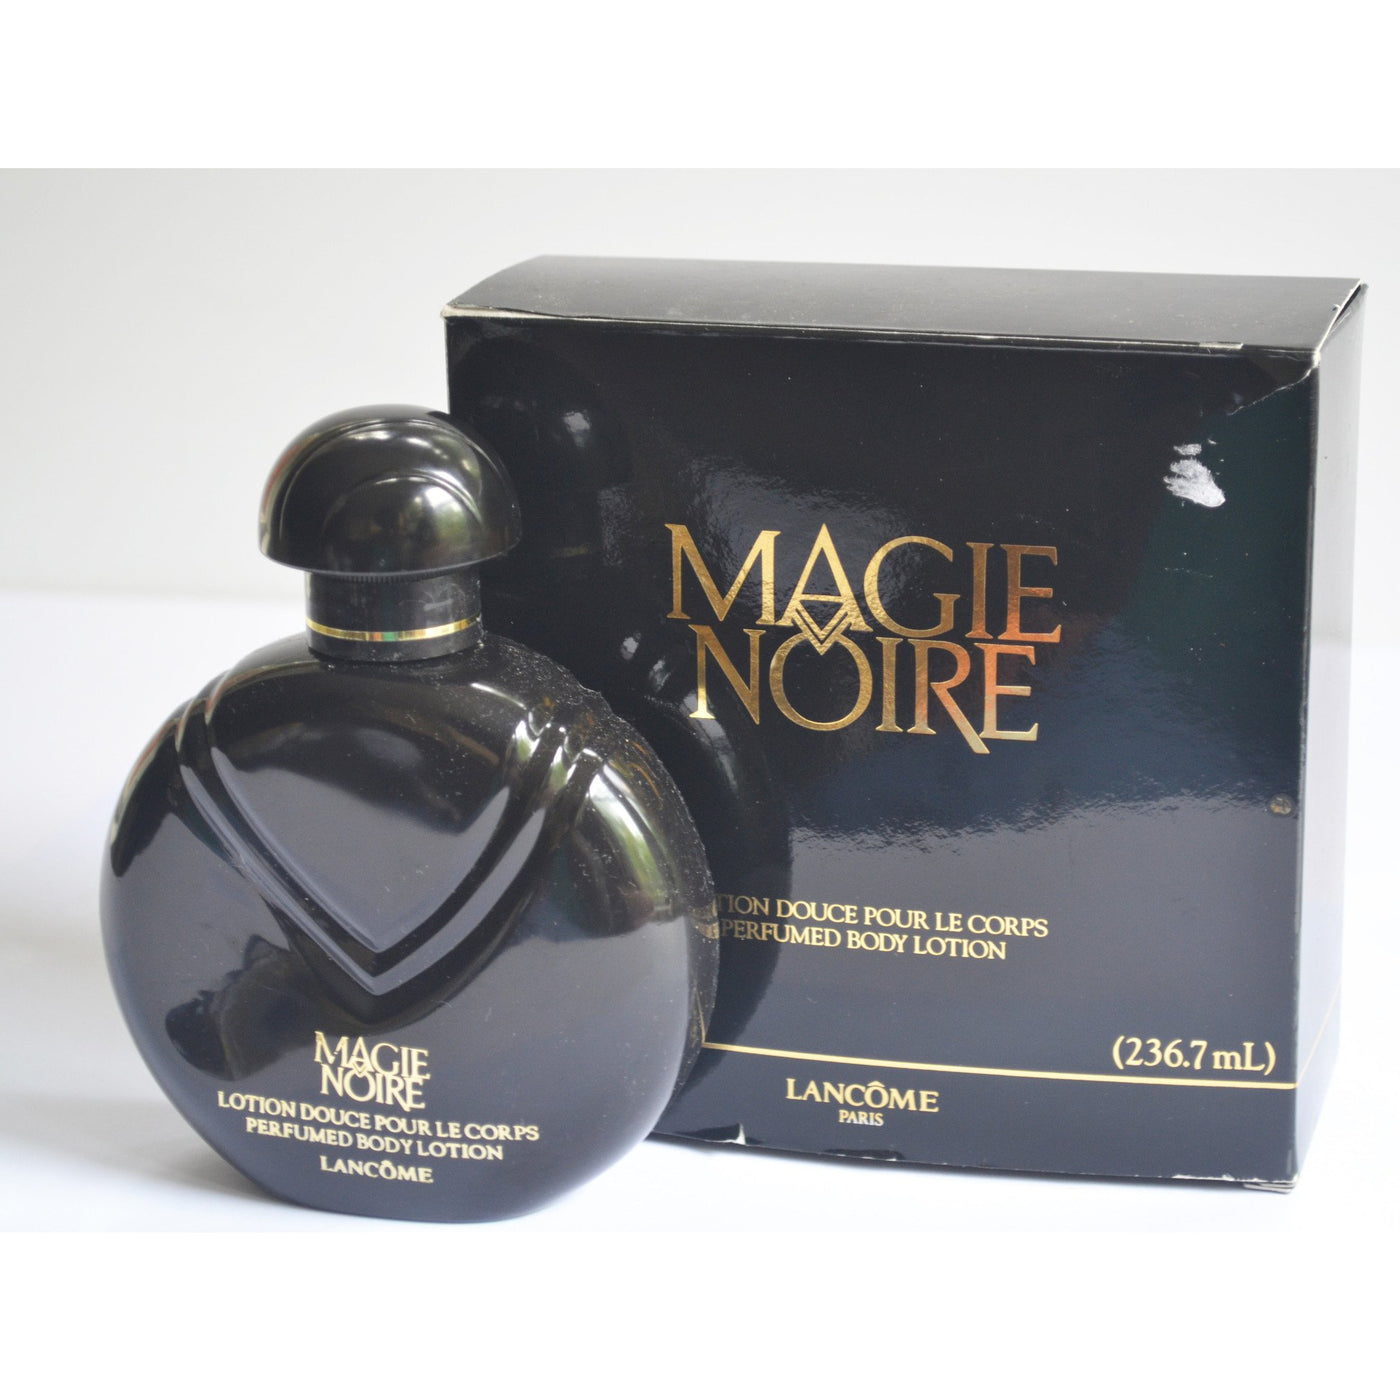 Vintage Lancome Magie Noire Perfume Lotion